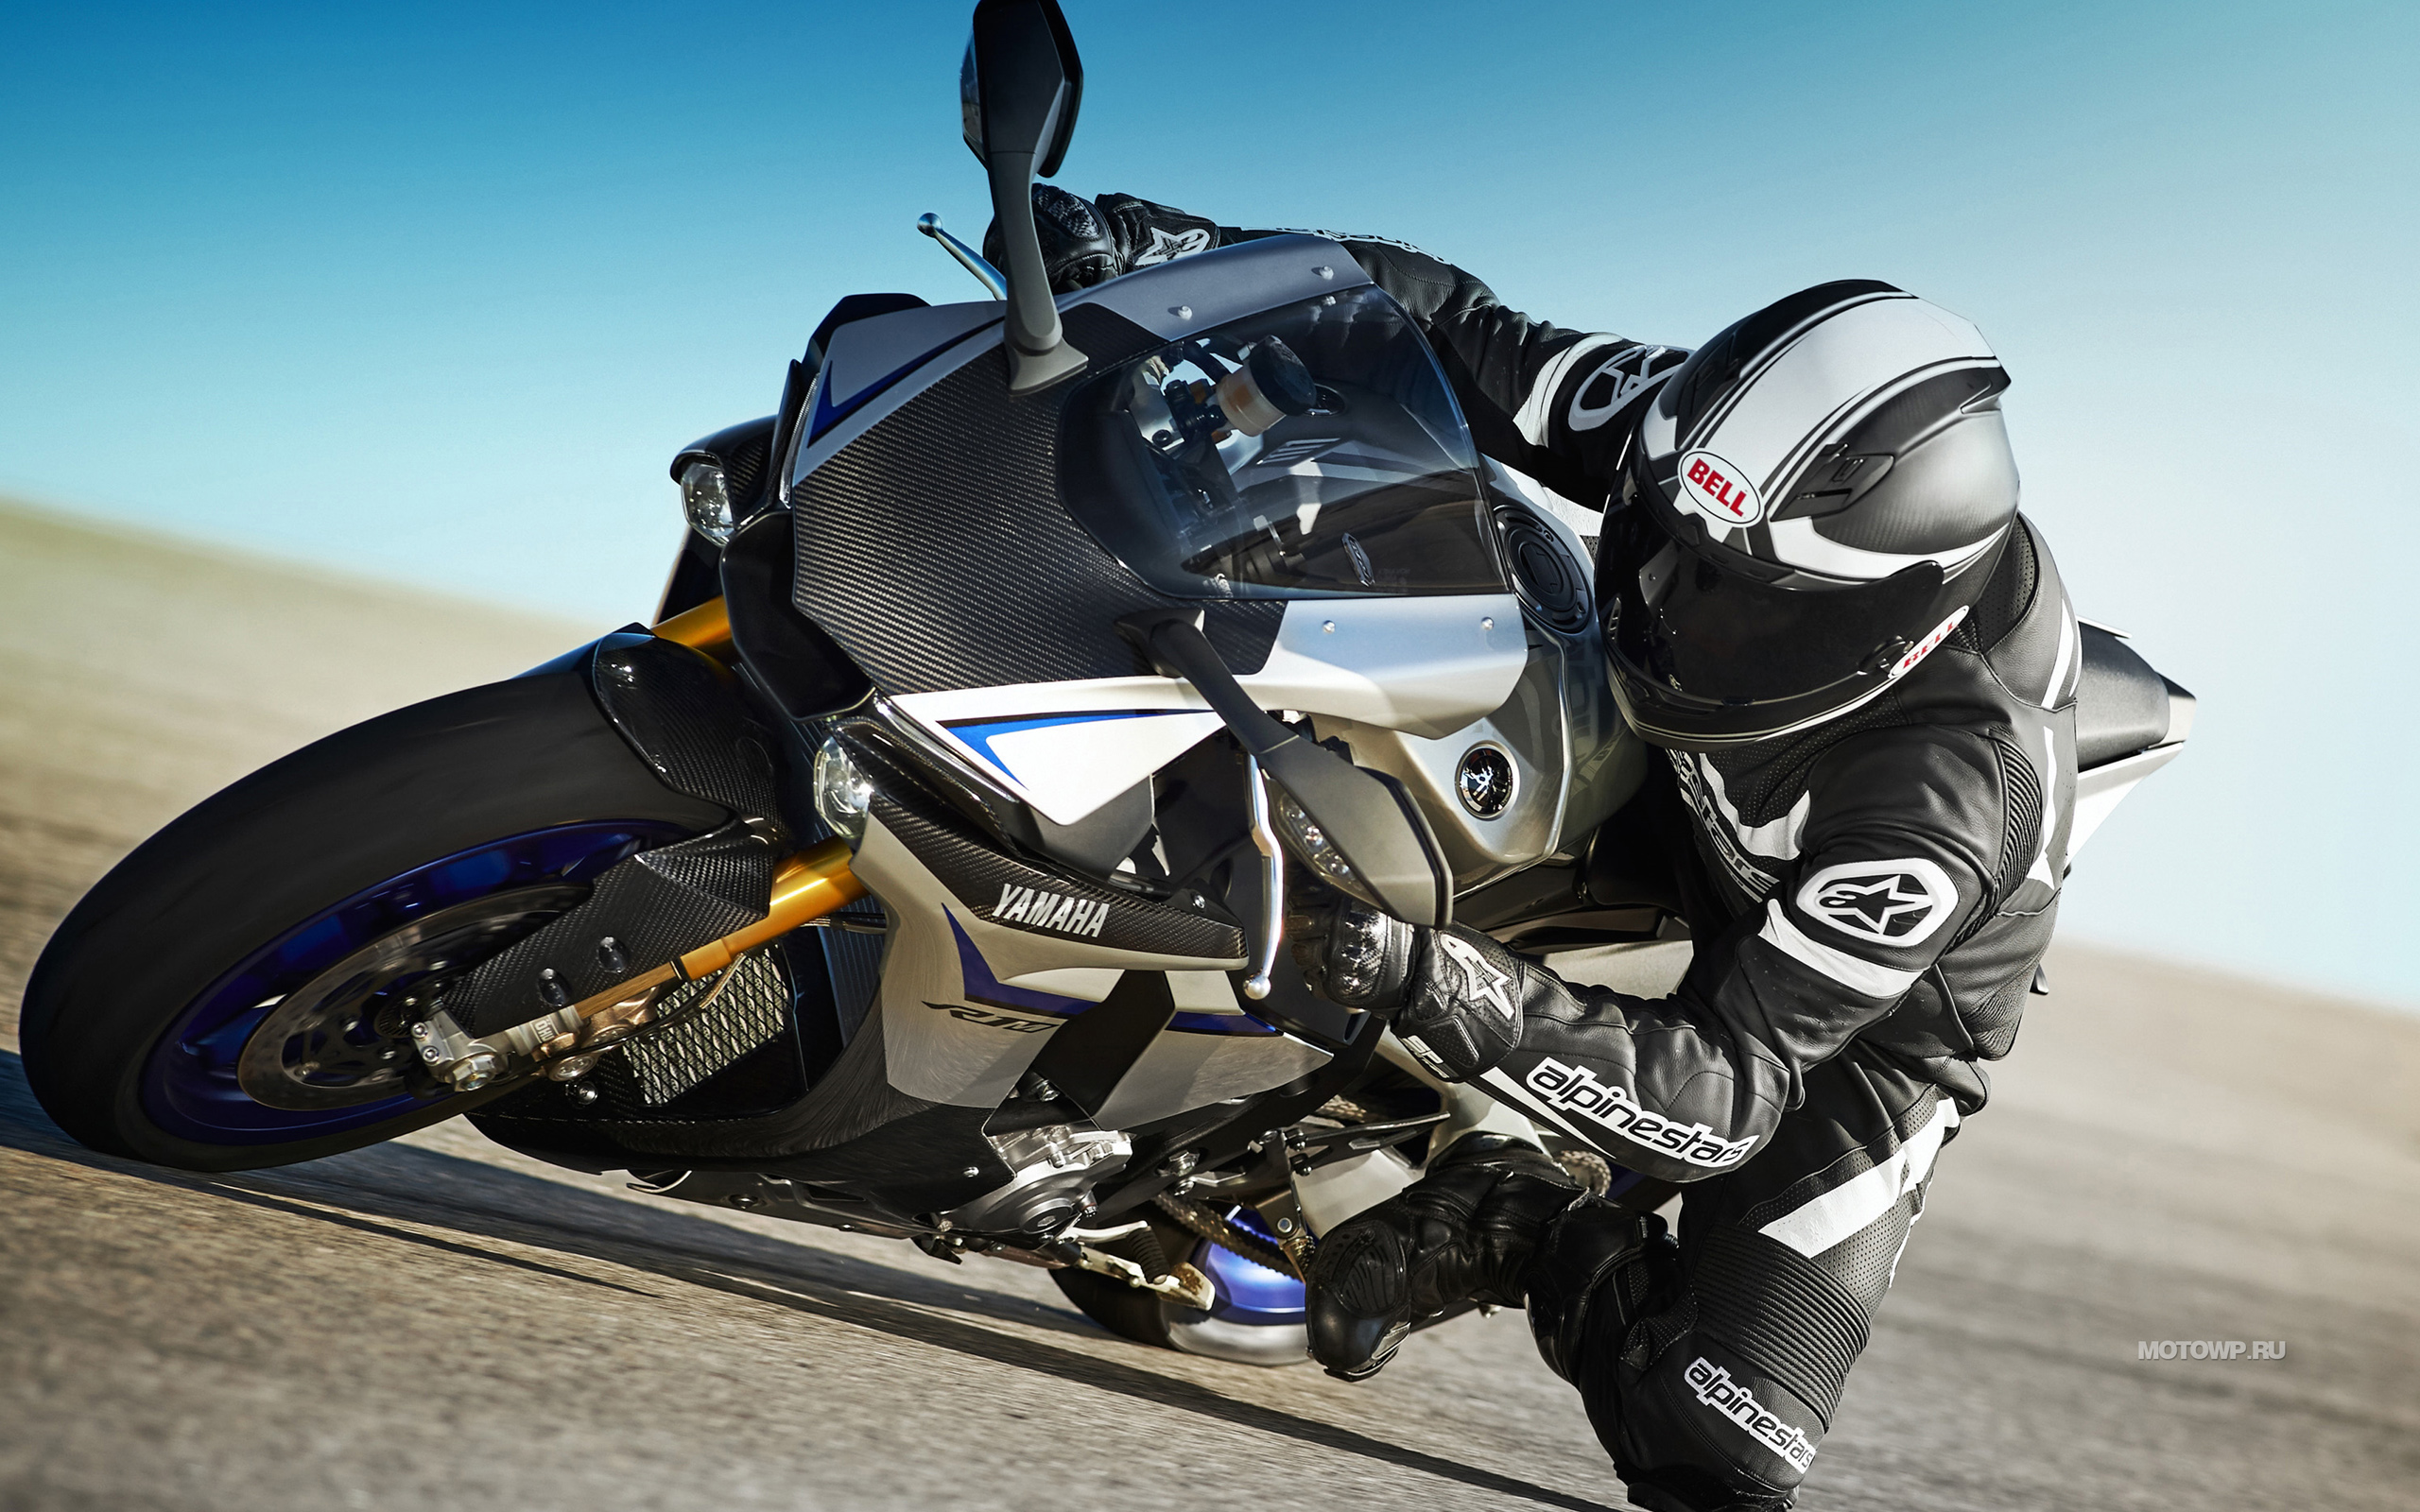 Самый быстрый мотоцикл в мире, топ 10 мотоциклов по мощности и скорости, фото и видео